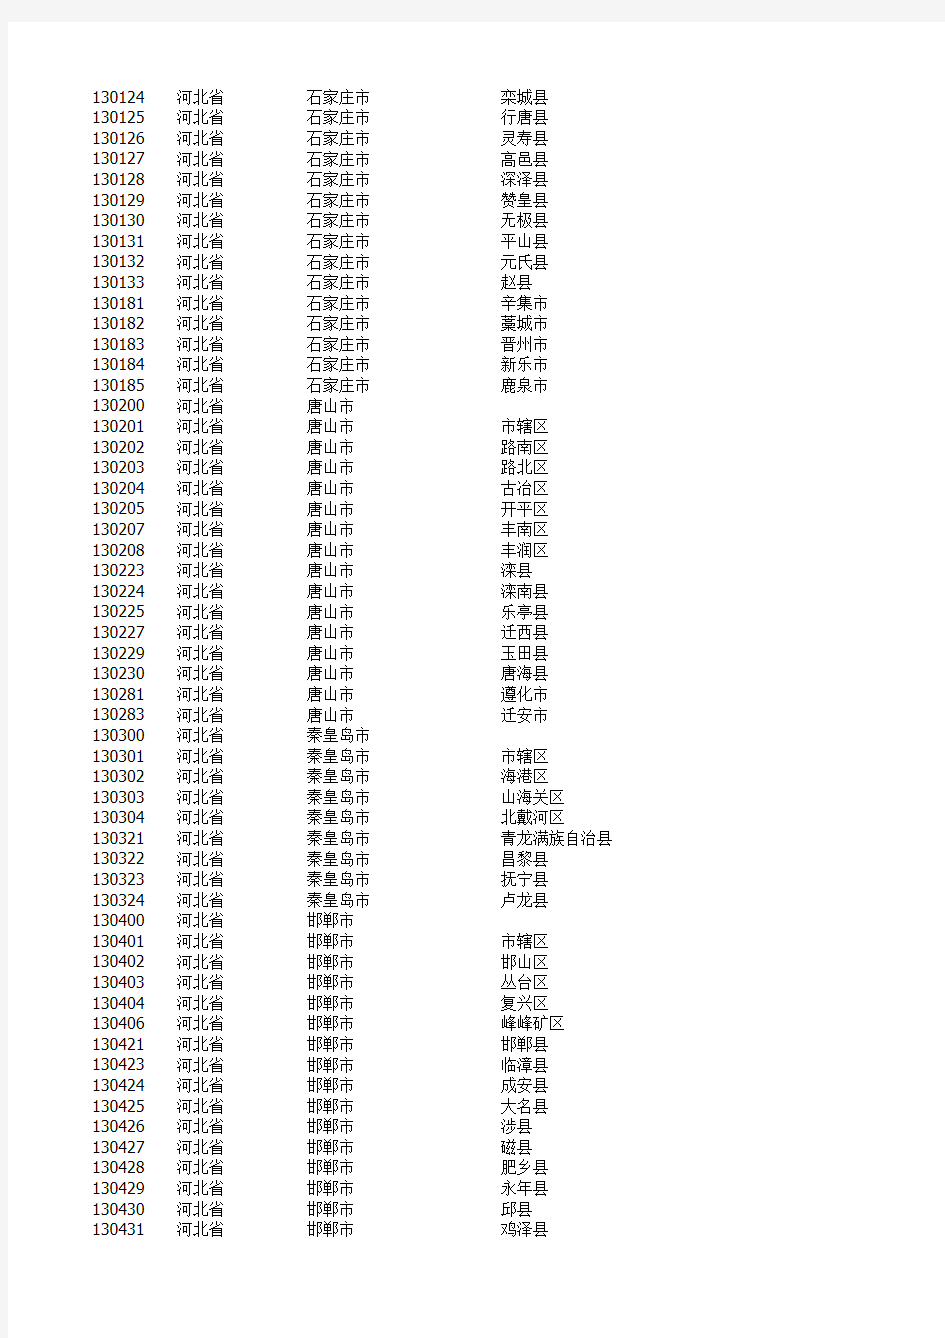 中国最新行政区划一览表(所有省市县名单_2012更新)